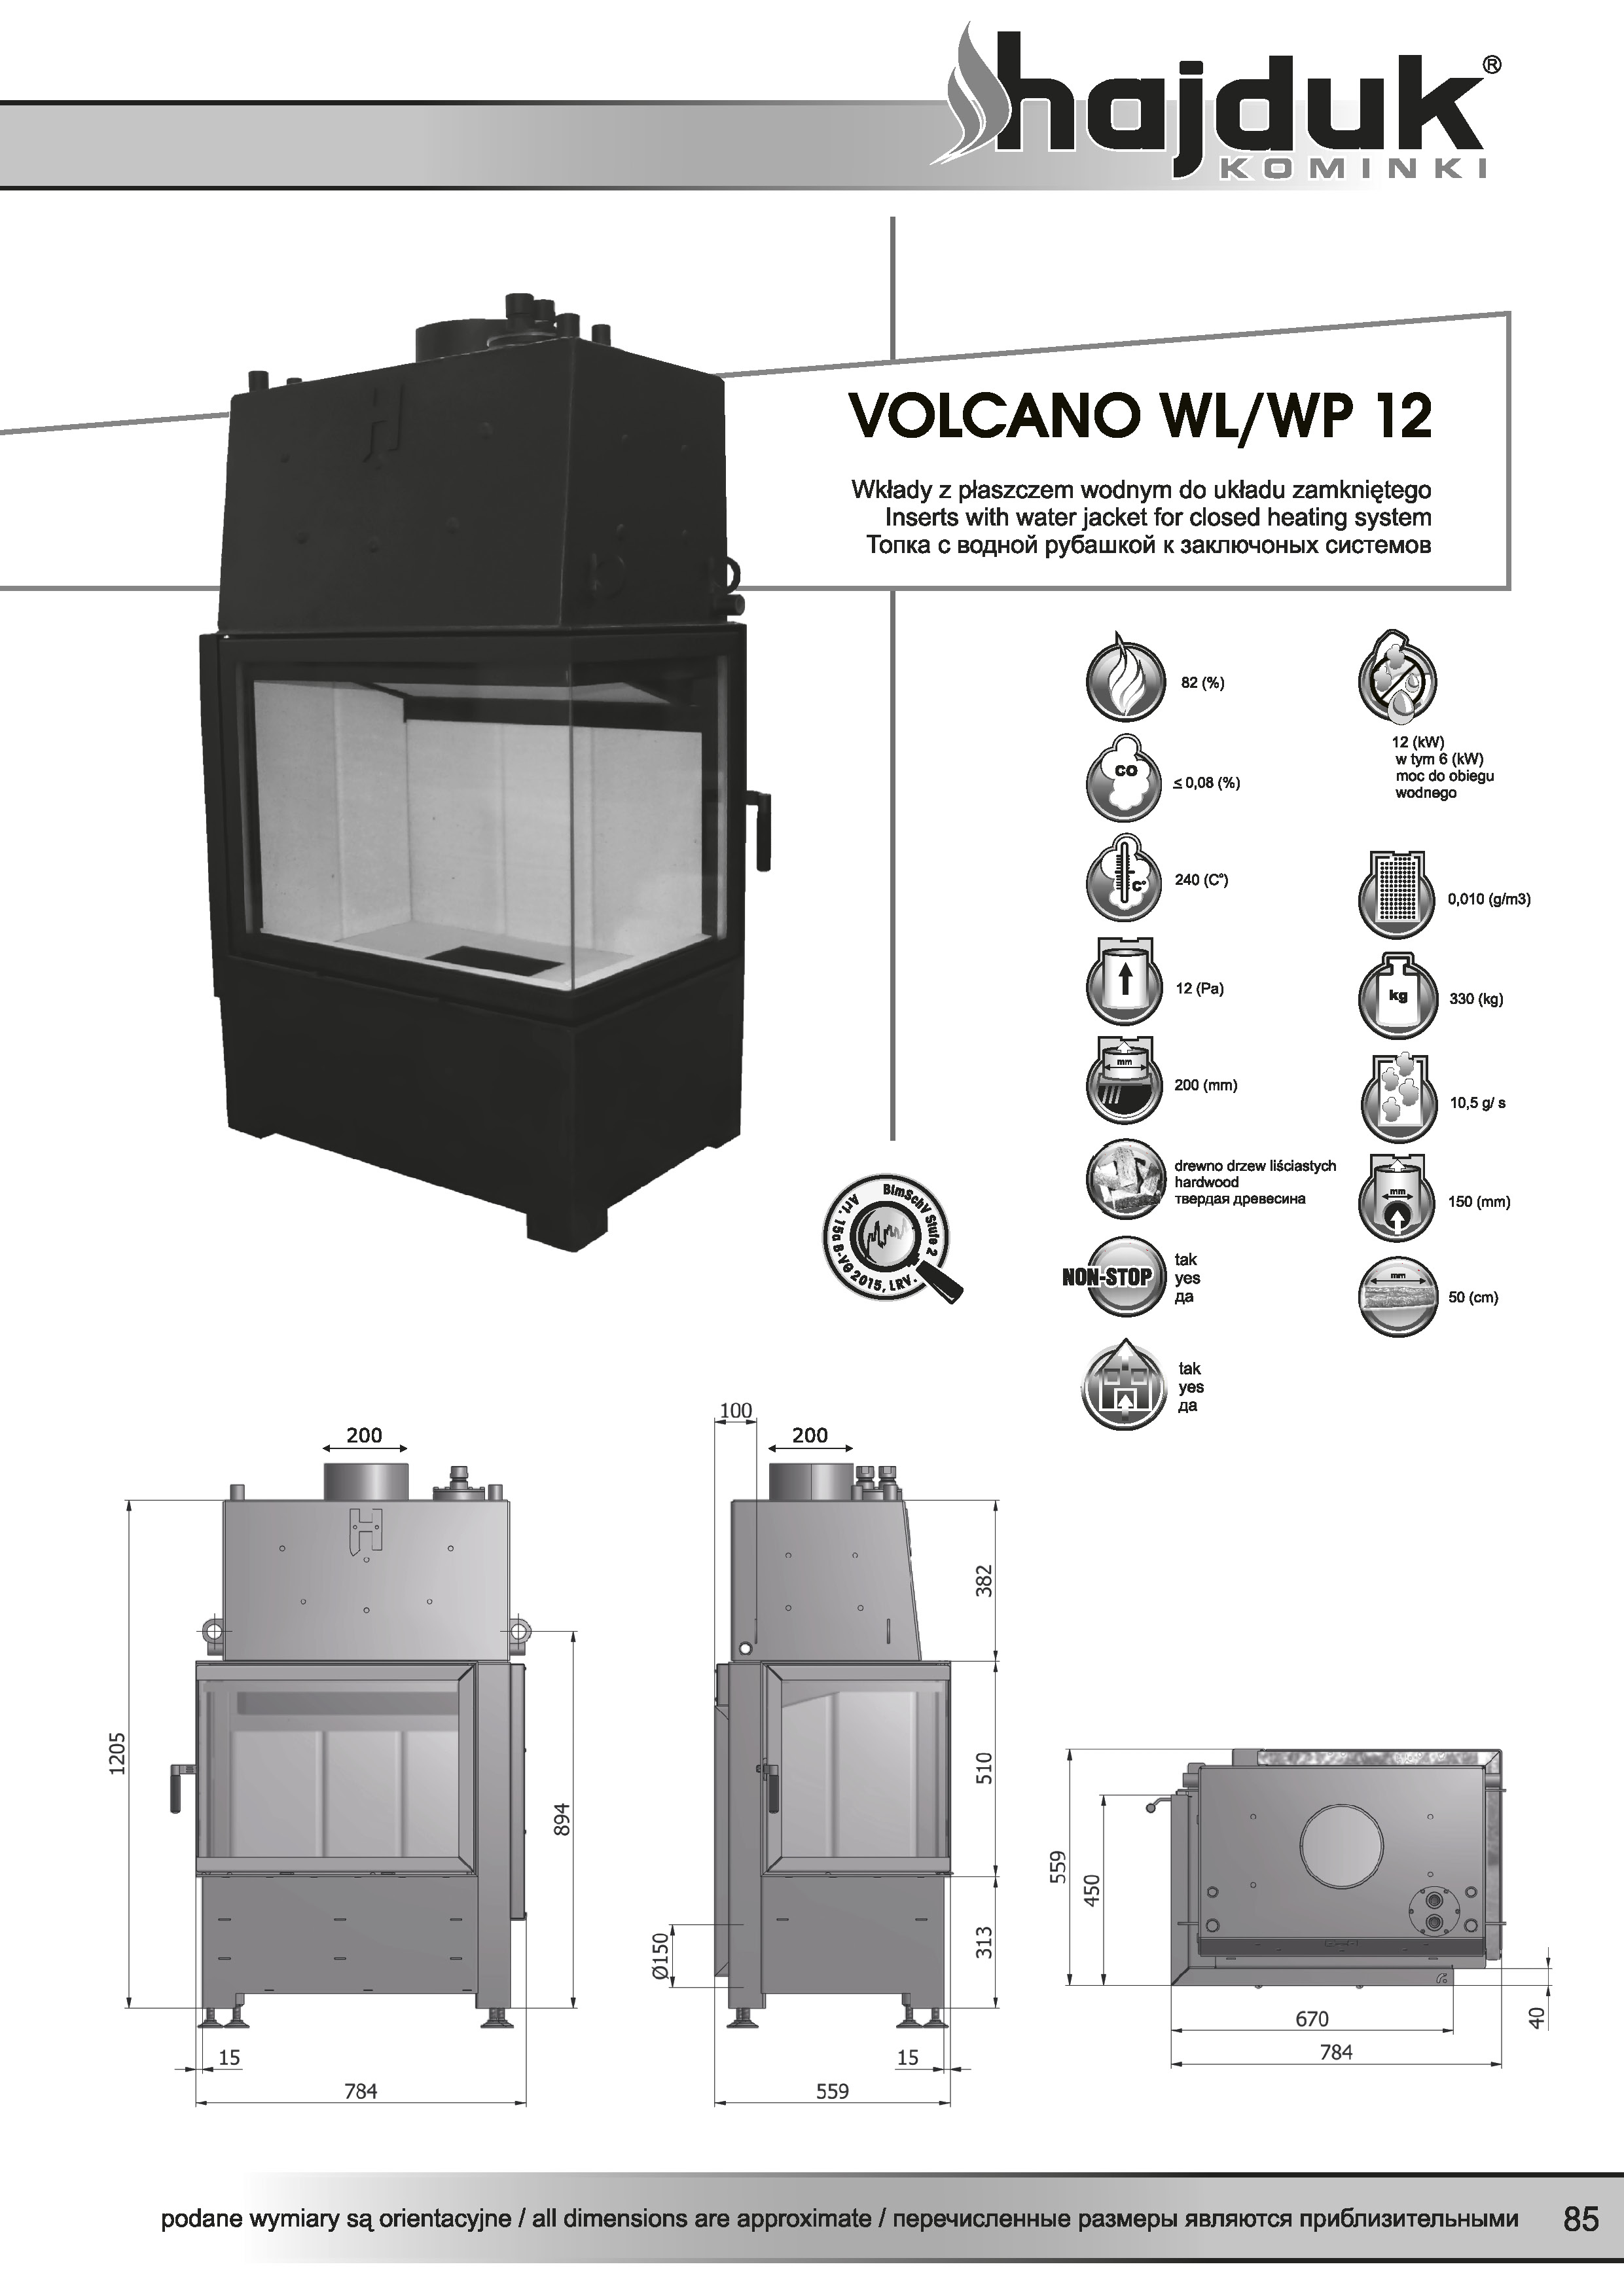 Volcano%20WL%20WP%20 %2012%20 %20karta%20techniczna - Hajduk  Volcano WL 12